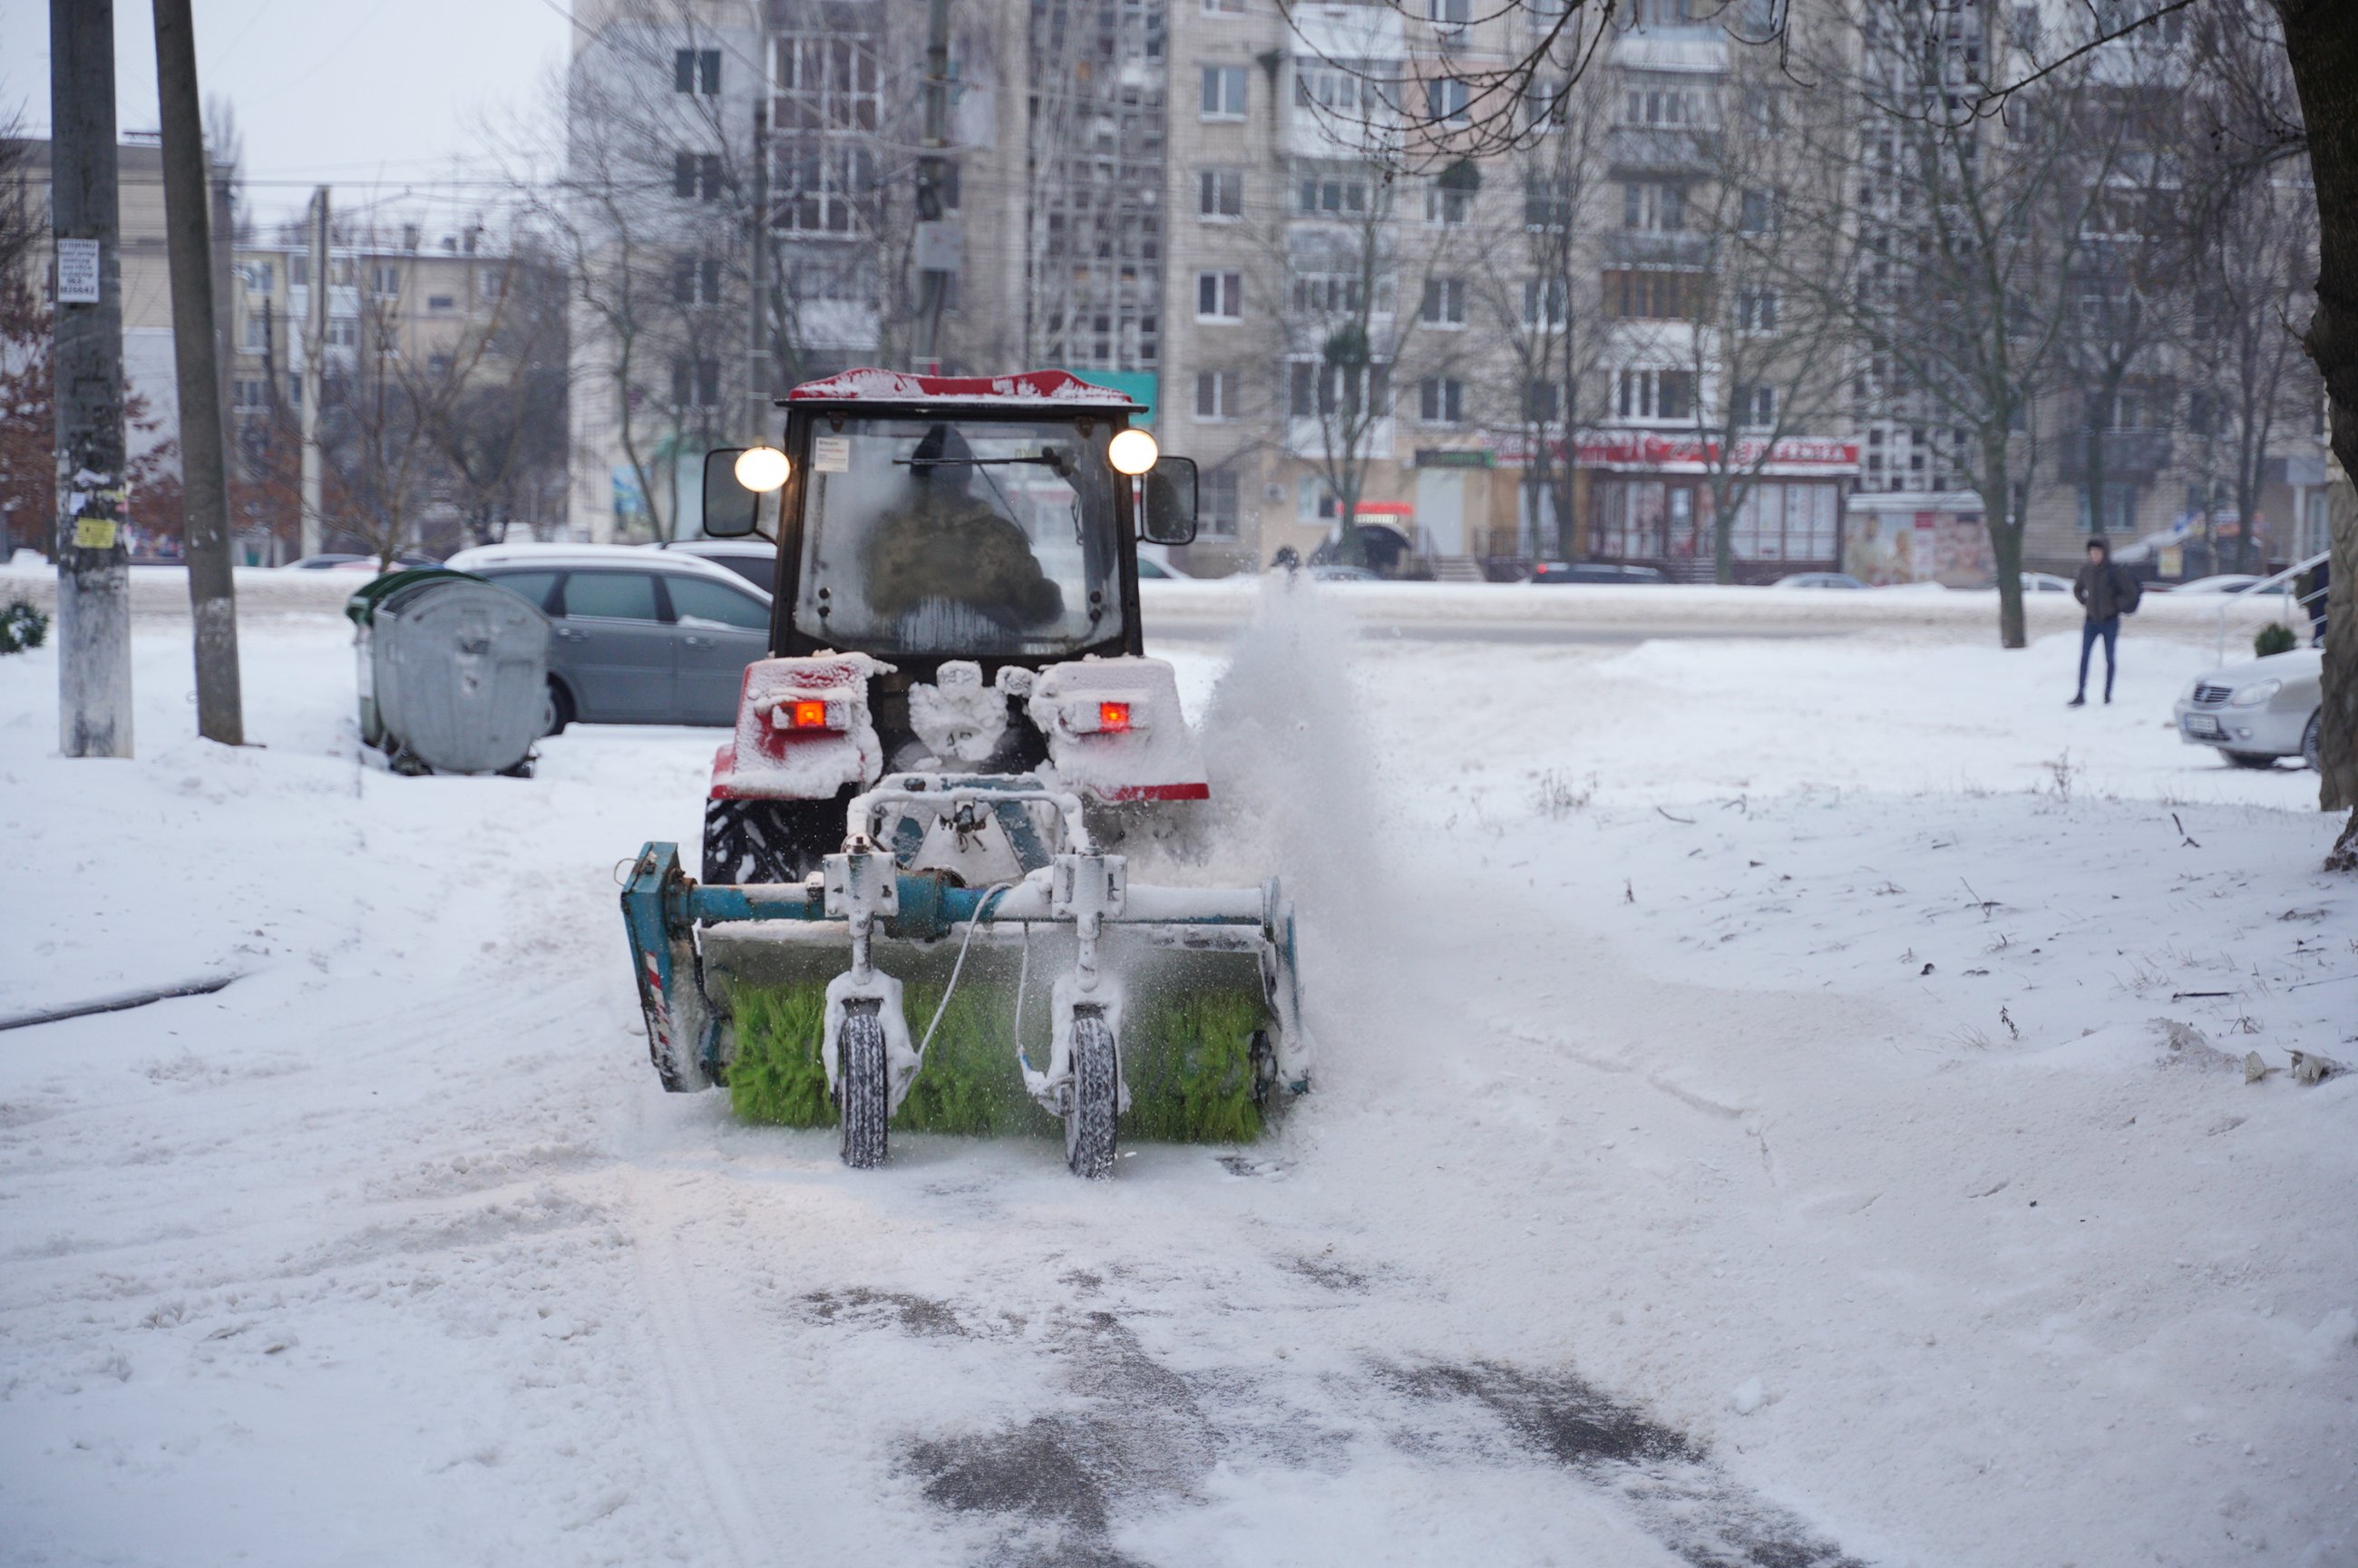 Сильні морози та ожеледиця: синоптики попереджають про суттєве похолодання на Вінниччині 